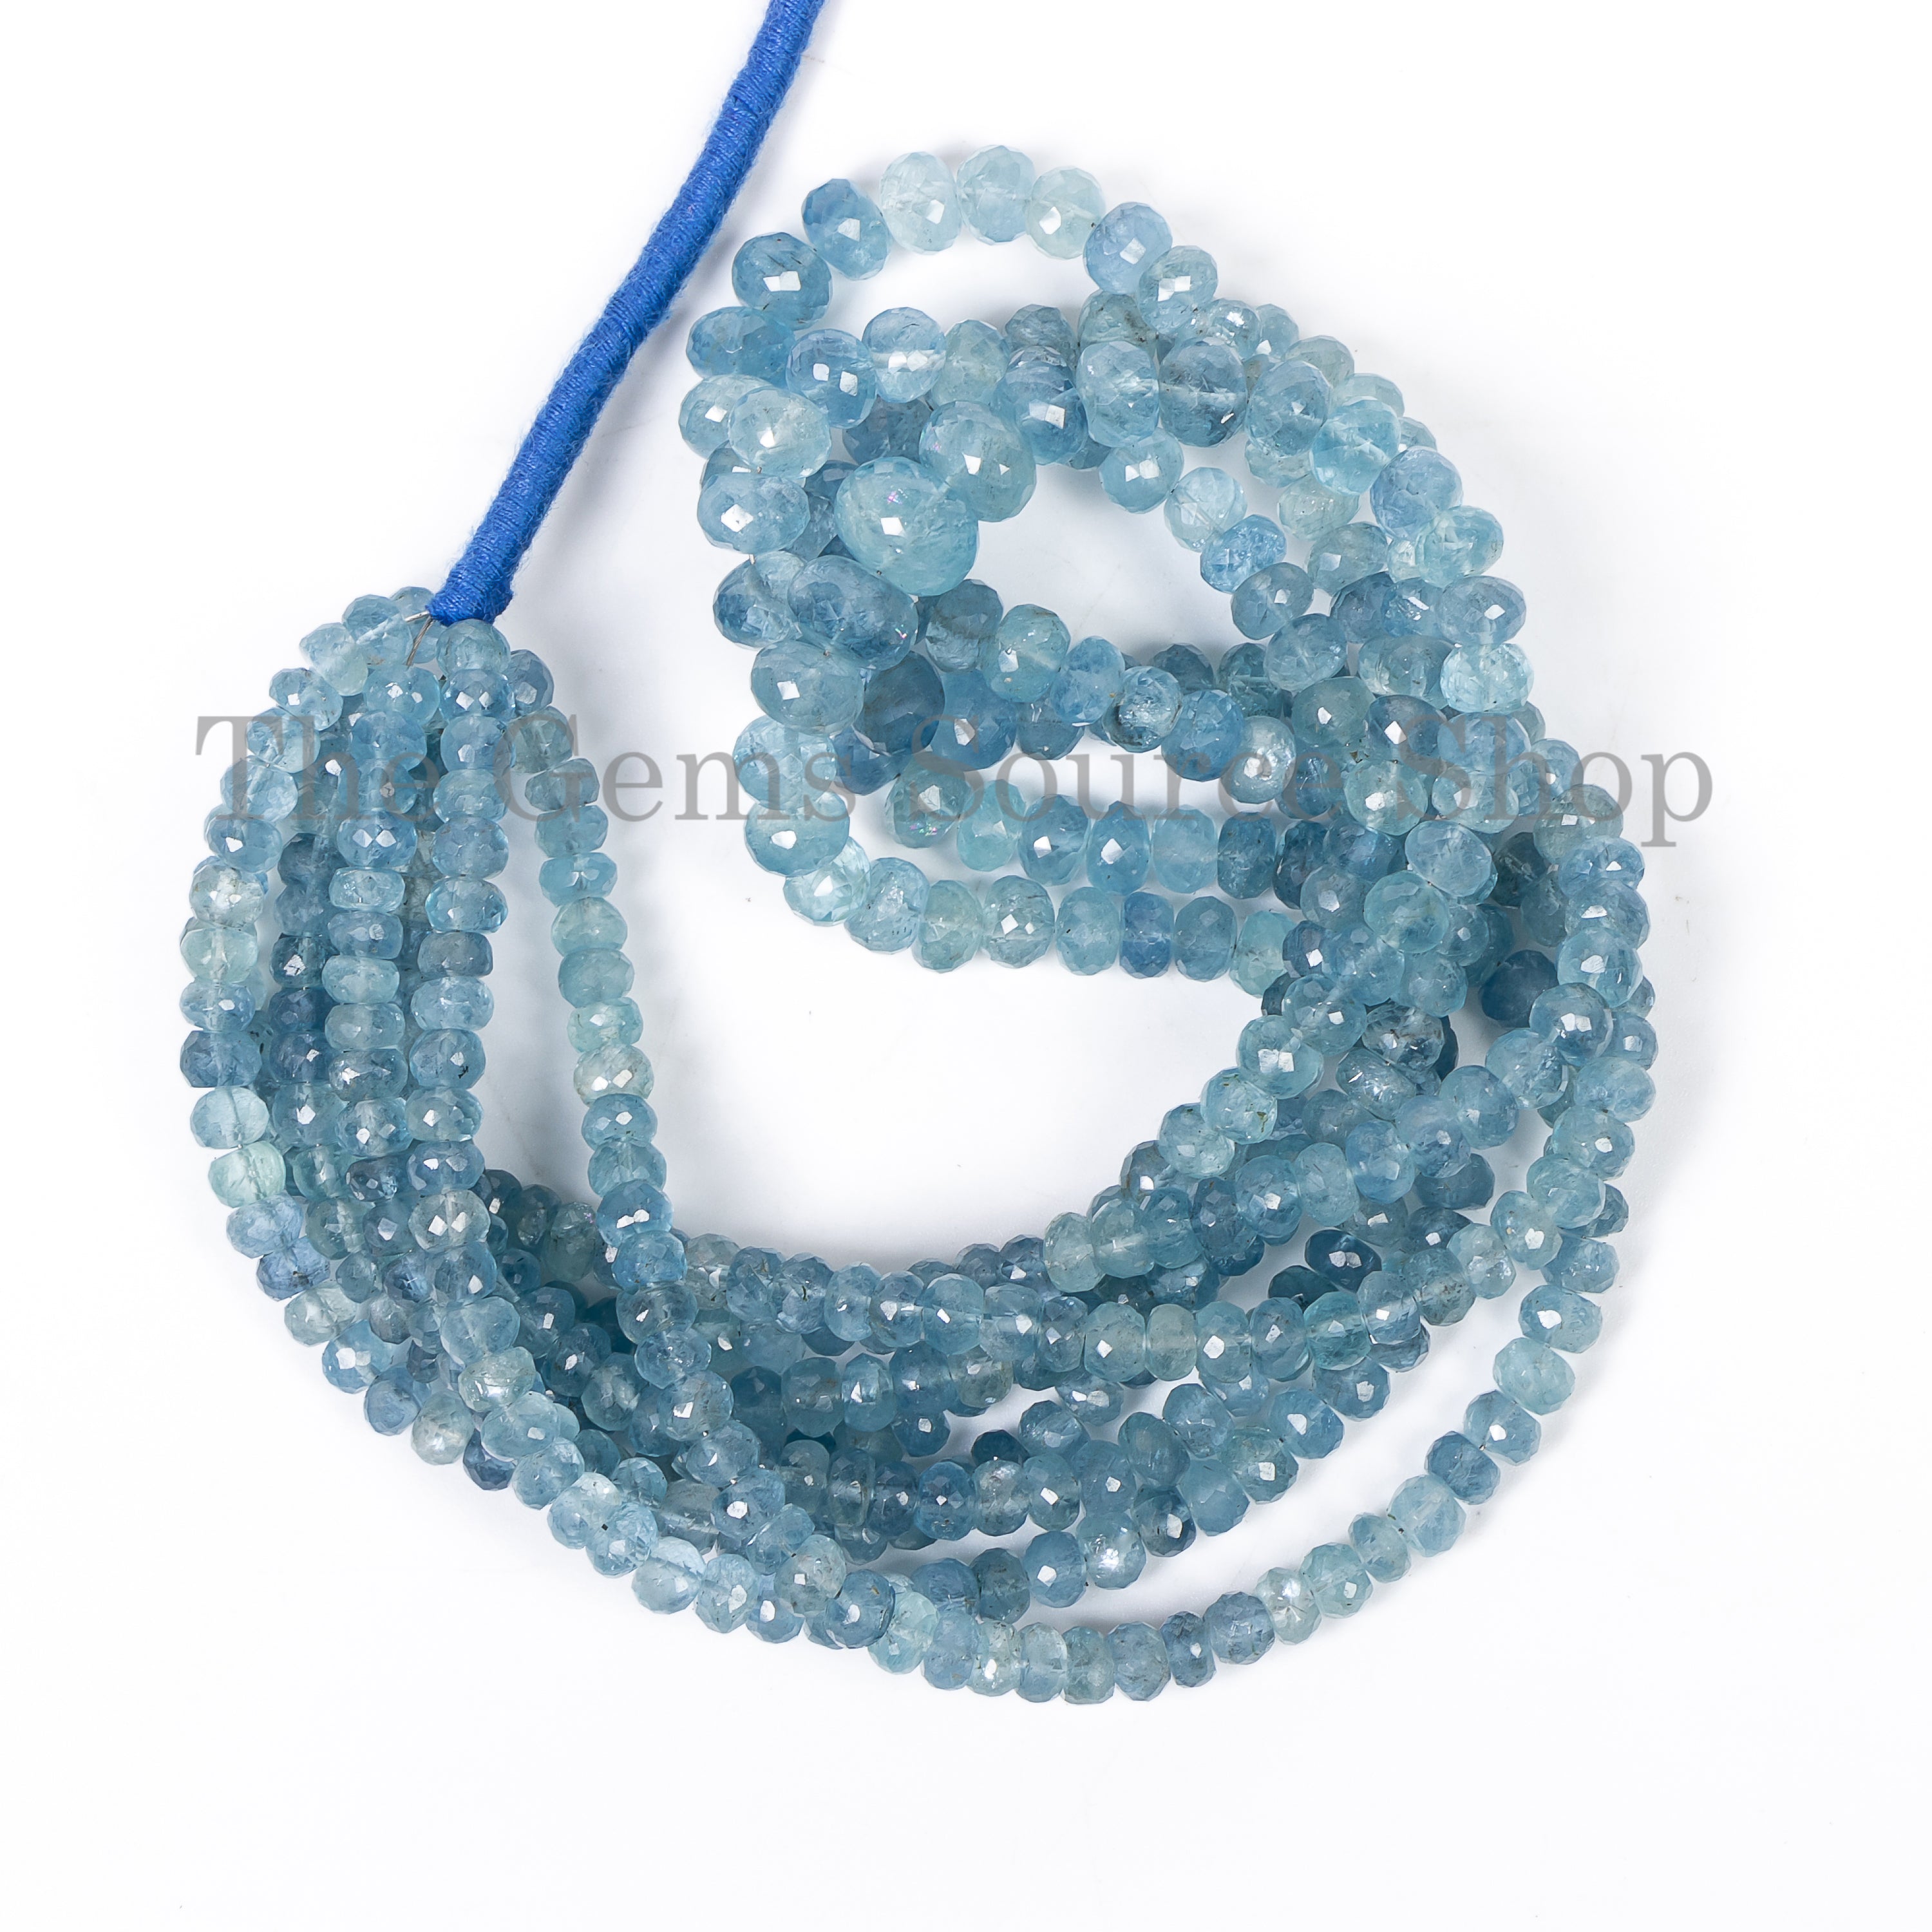 Genuine Santa Maria Aquamarine Faceted Rondelle Beads TGS-4860